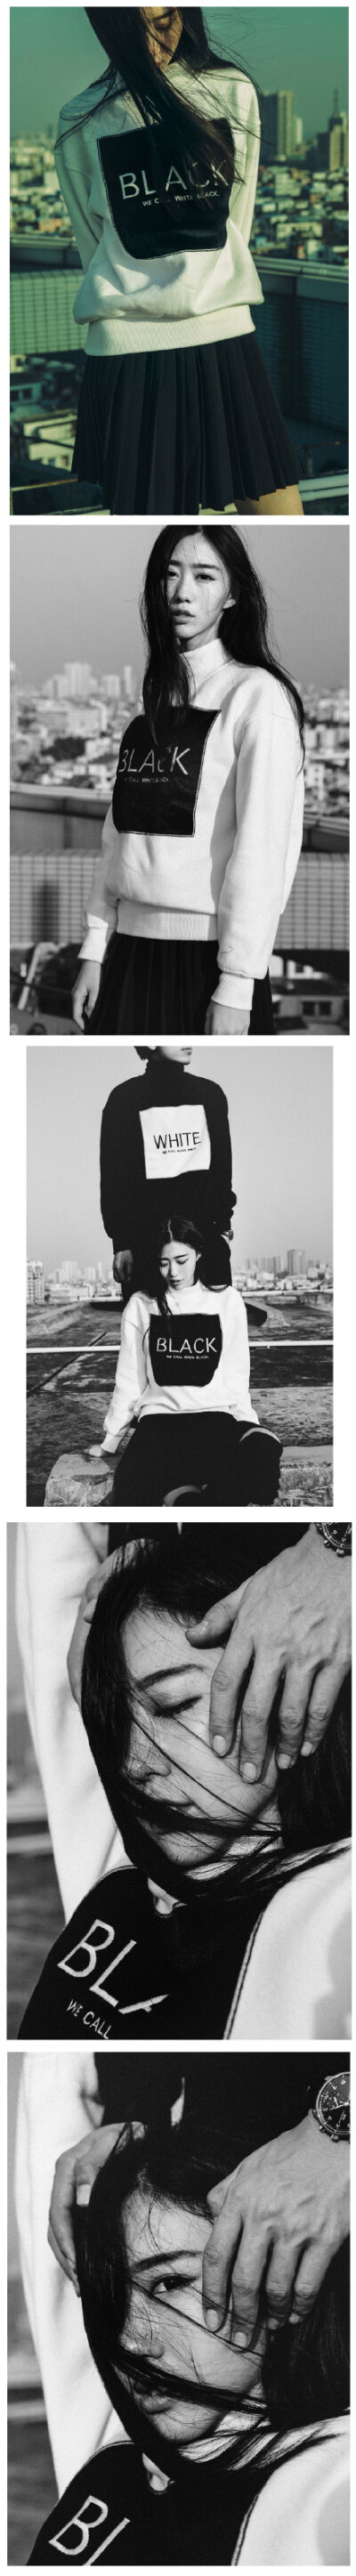 「WE CALL BLACK WHITE. 」——我們，顛倒黑白。